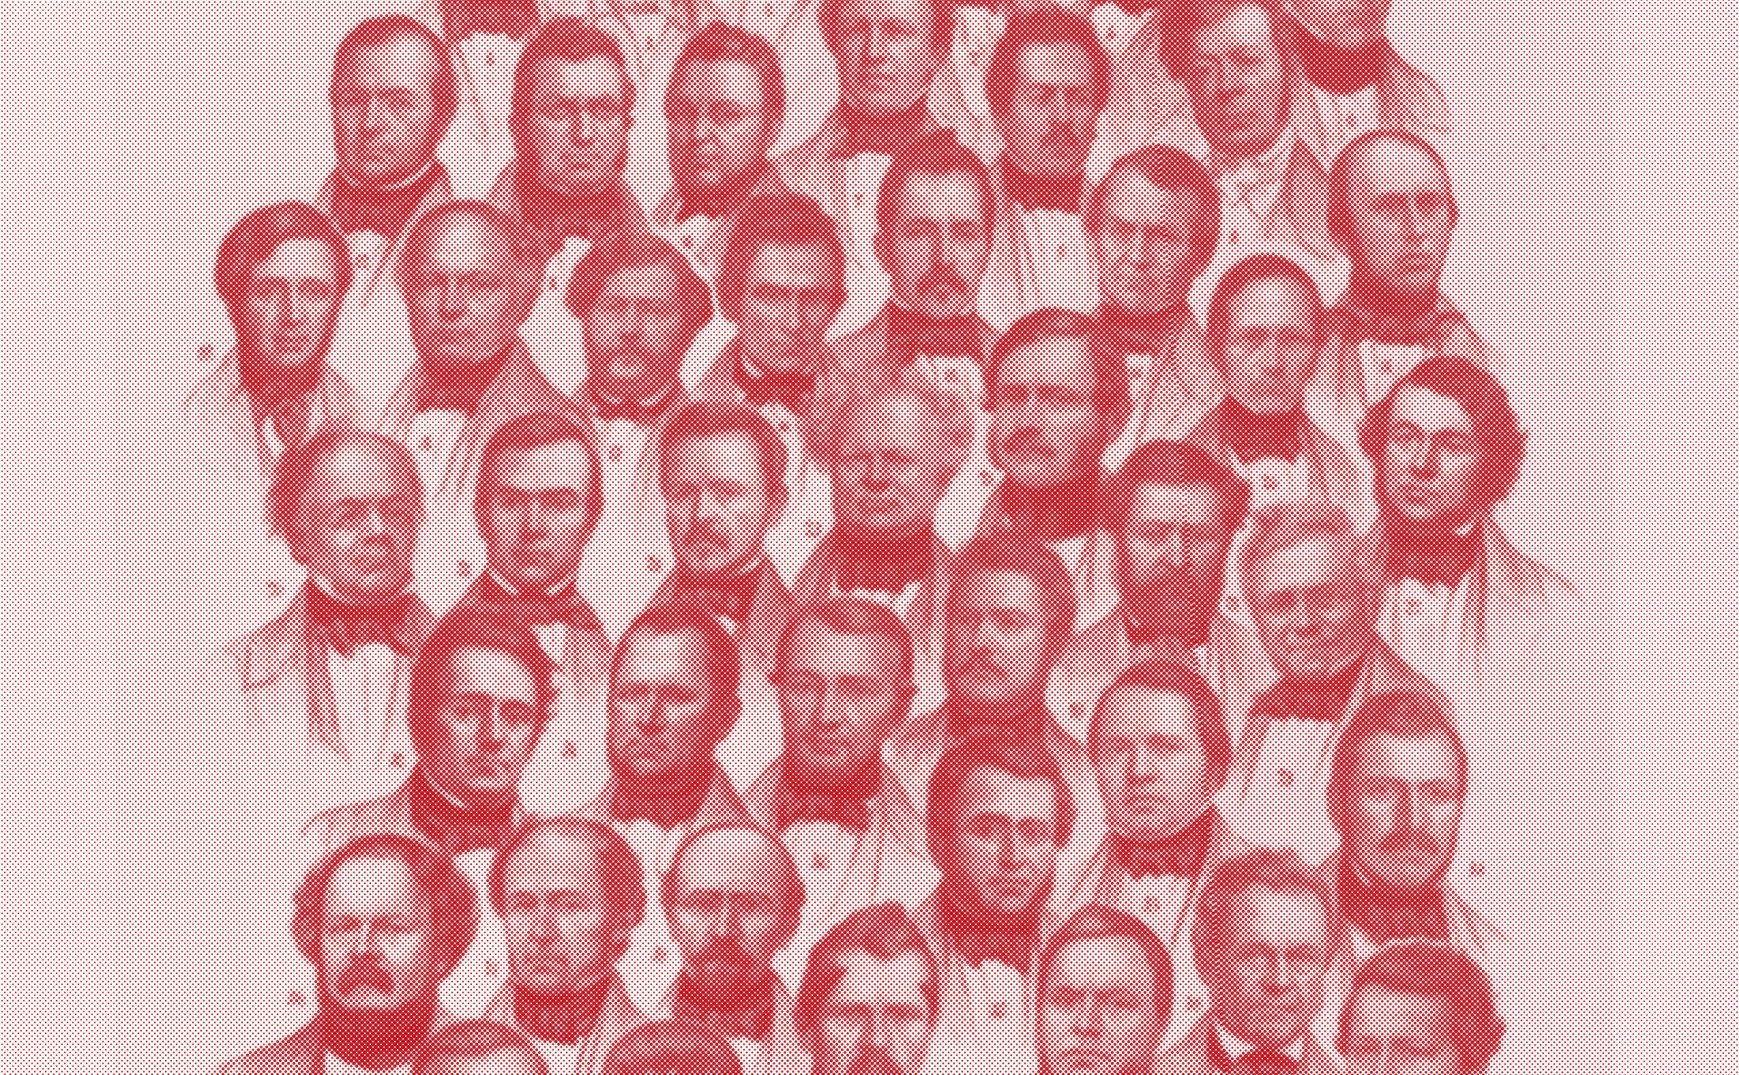 Ausschnitt Bundesversammlung 1848-1920